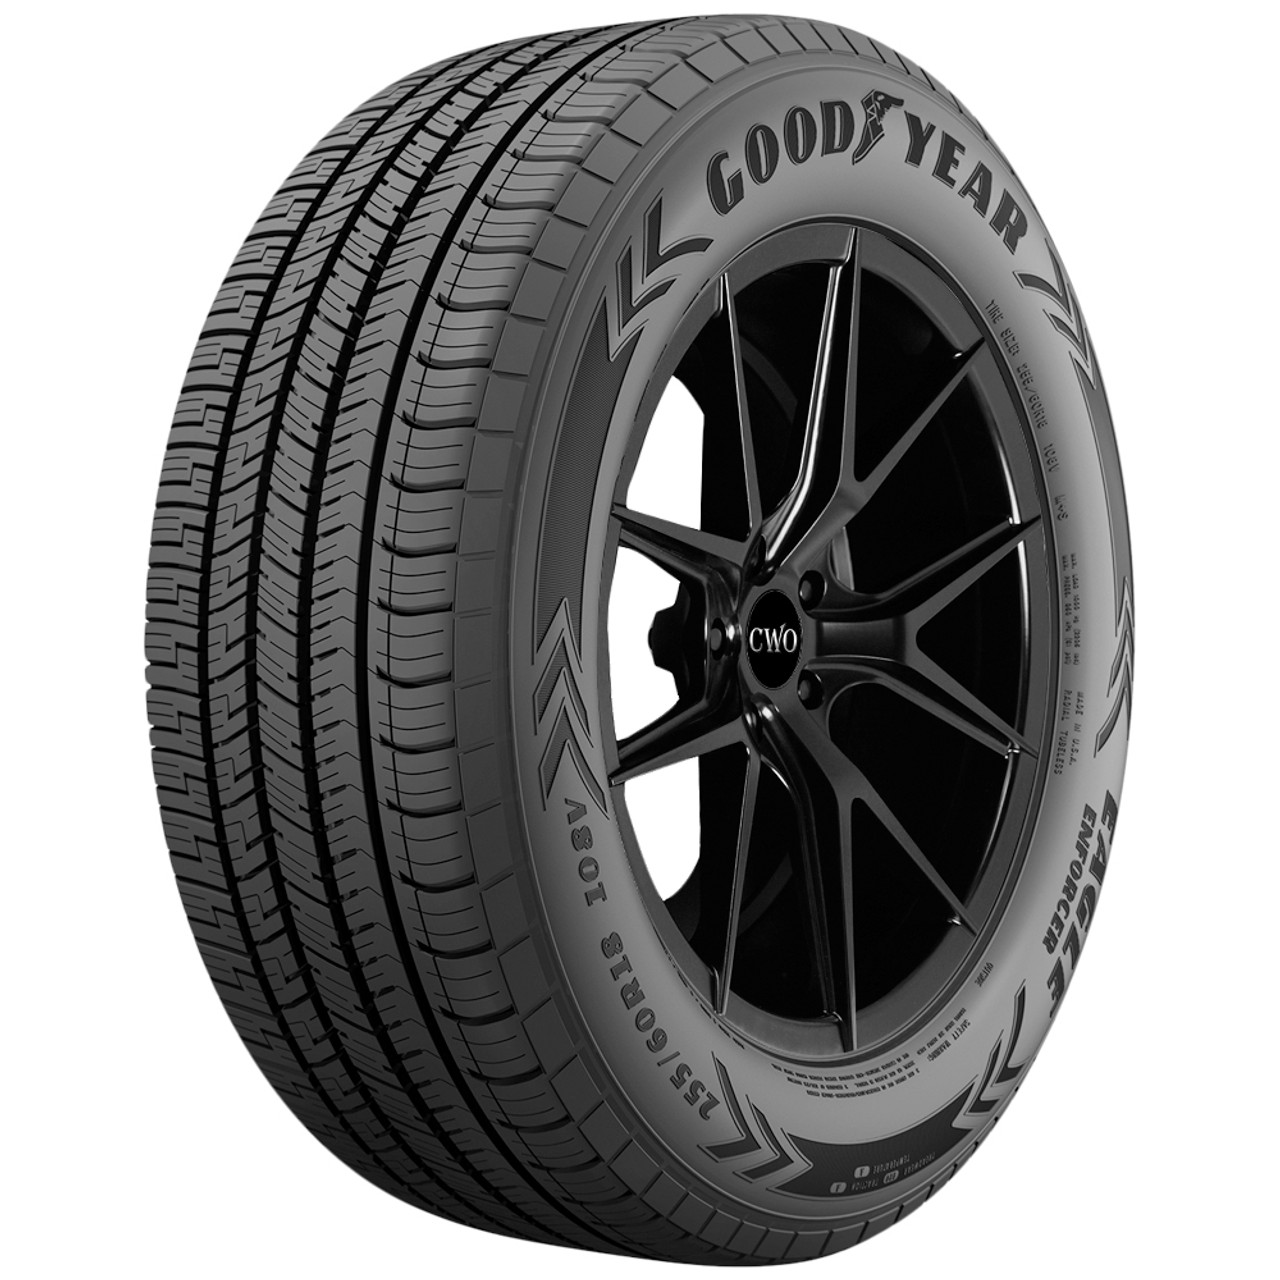 Goodyear Eagle Enforcer Tire 255/60R18 732005563